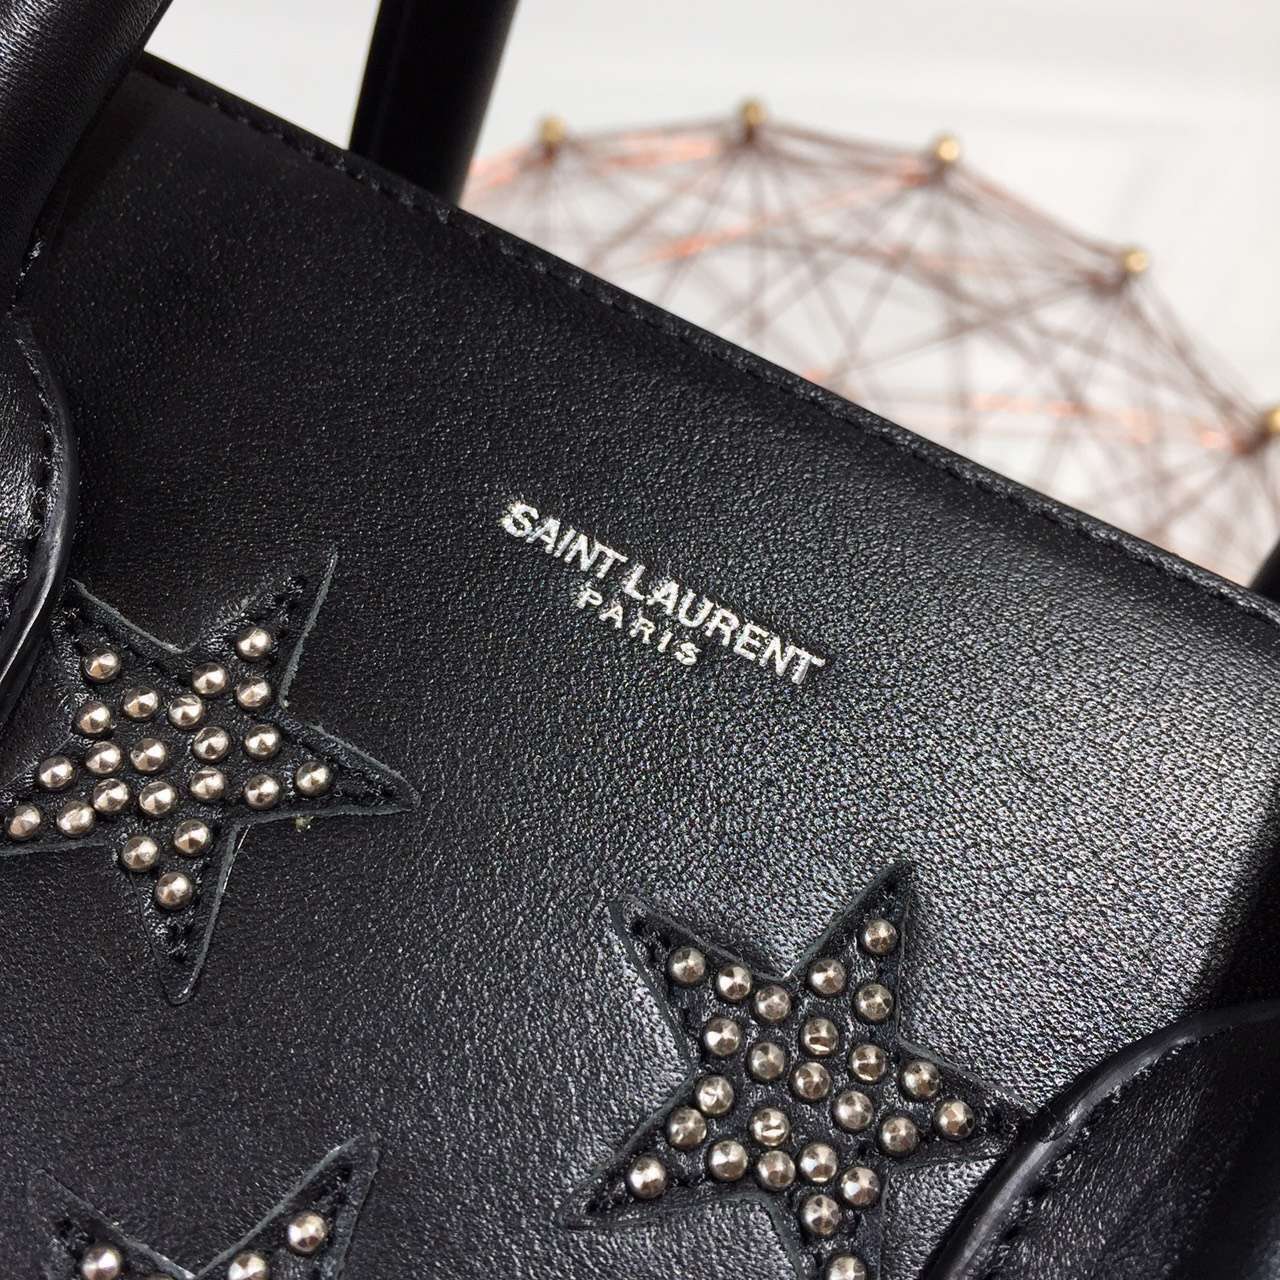 2015 New Saint Laurent Bag Cheap Sale-Saint Laurent Classic 32cm Sac De Jour Bag in Black Calf Leather with Star Studs - Click Image to Close